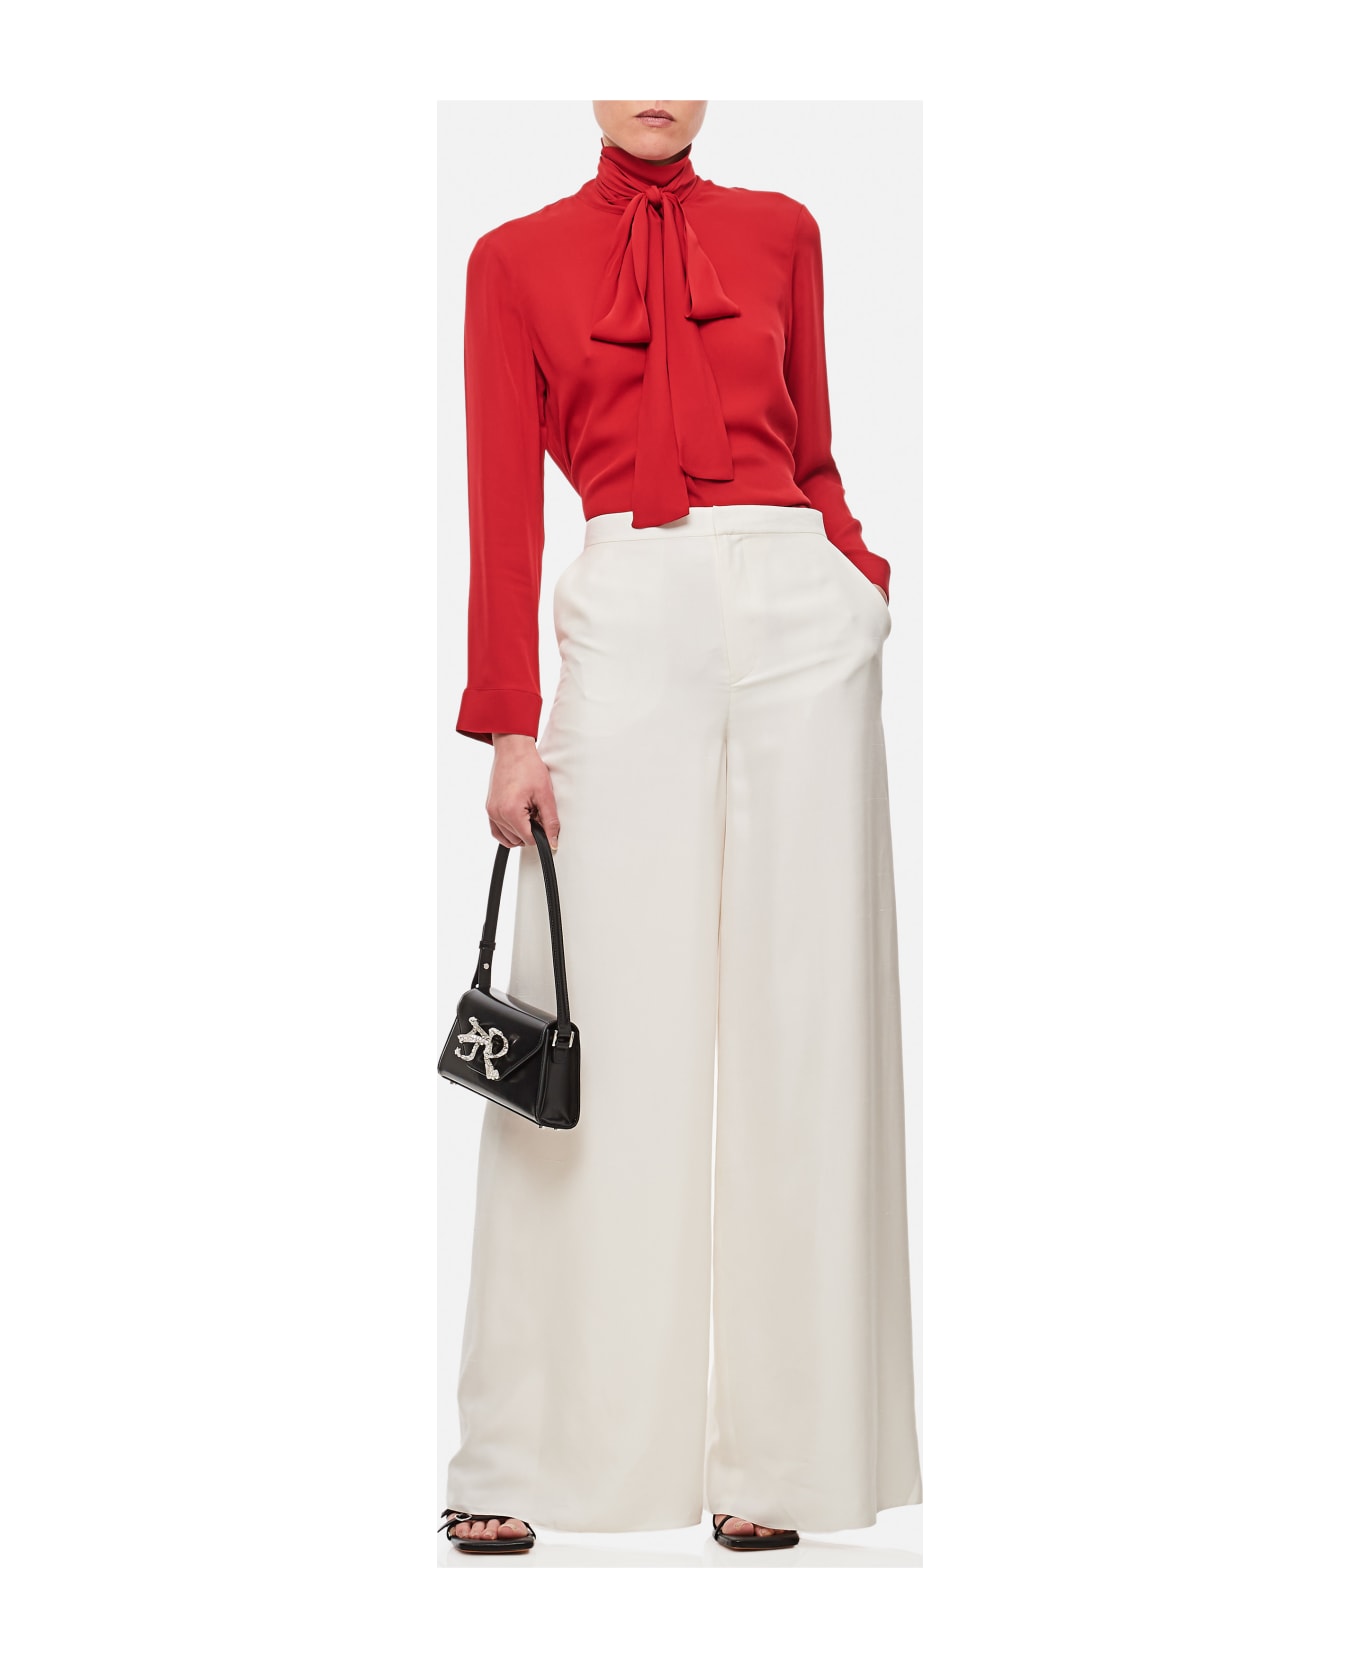 Ralph Lauren Elaine Full Length Silk Trousers - White